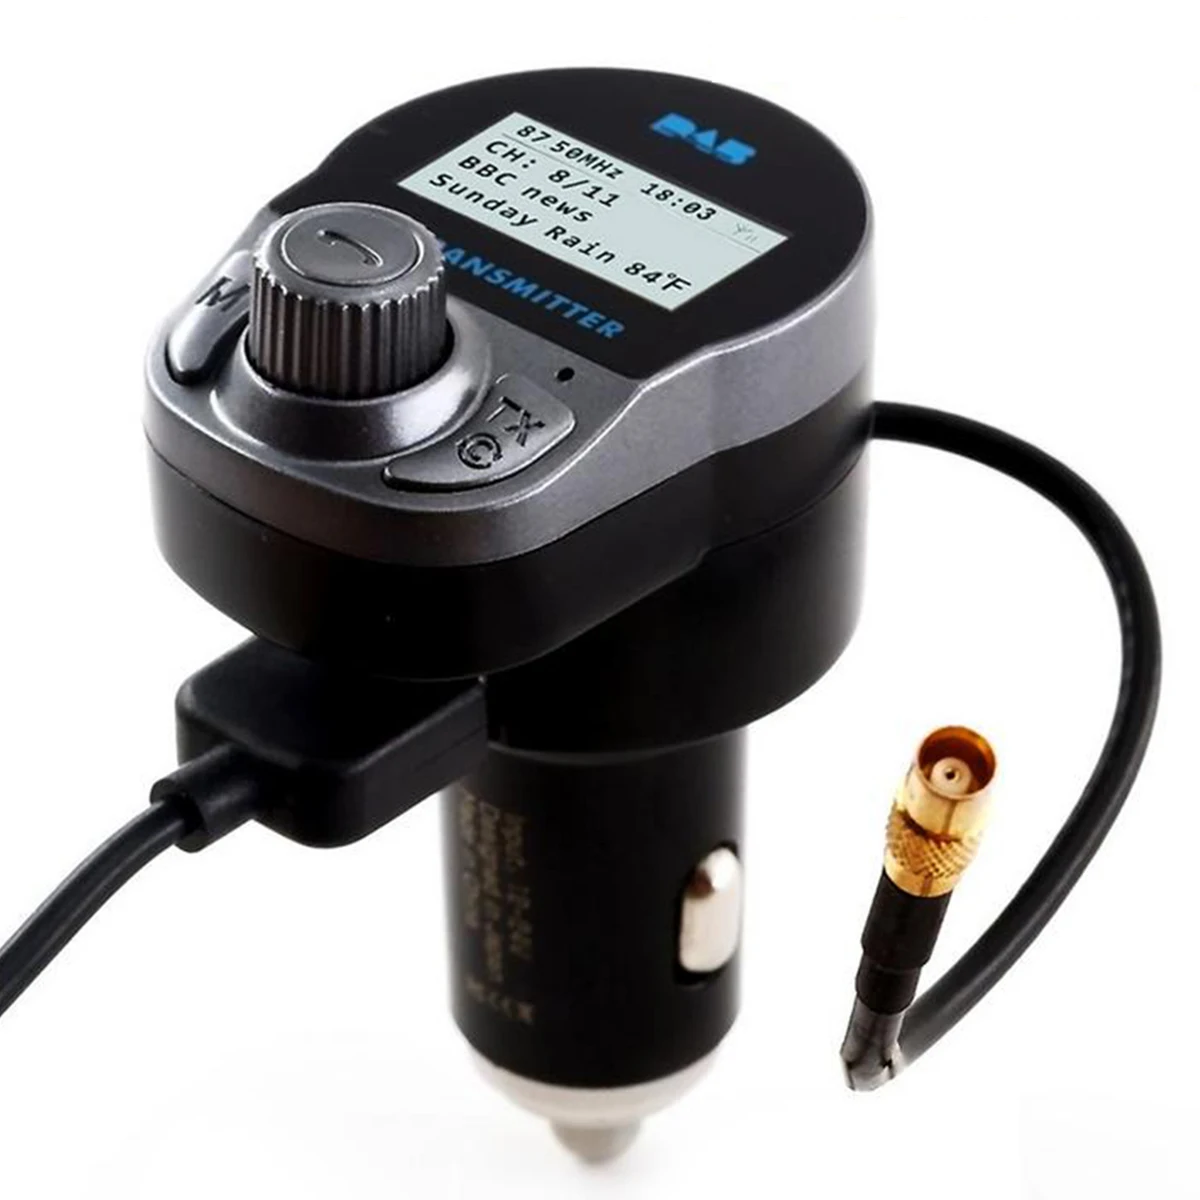 Автомобильный DAB цифровой радио приемник тюнер Bluetooth MP3 плеер USB адаптер fm-передатчик с TF слот для карты